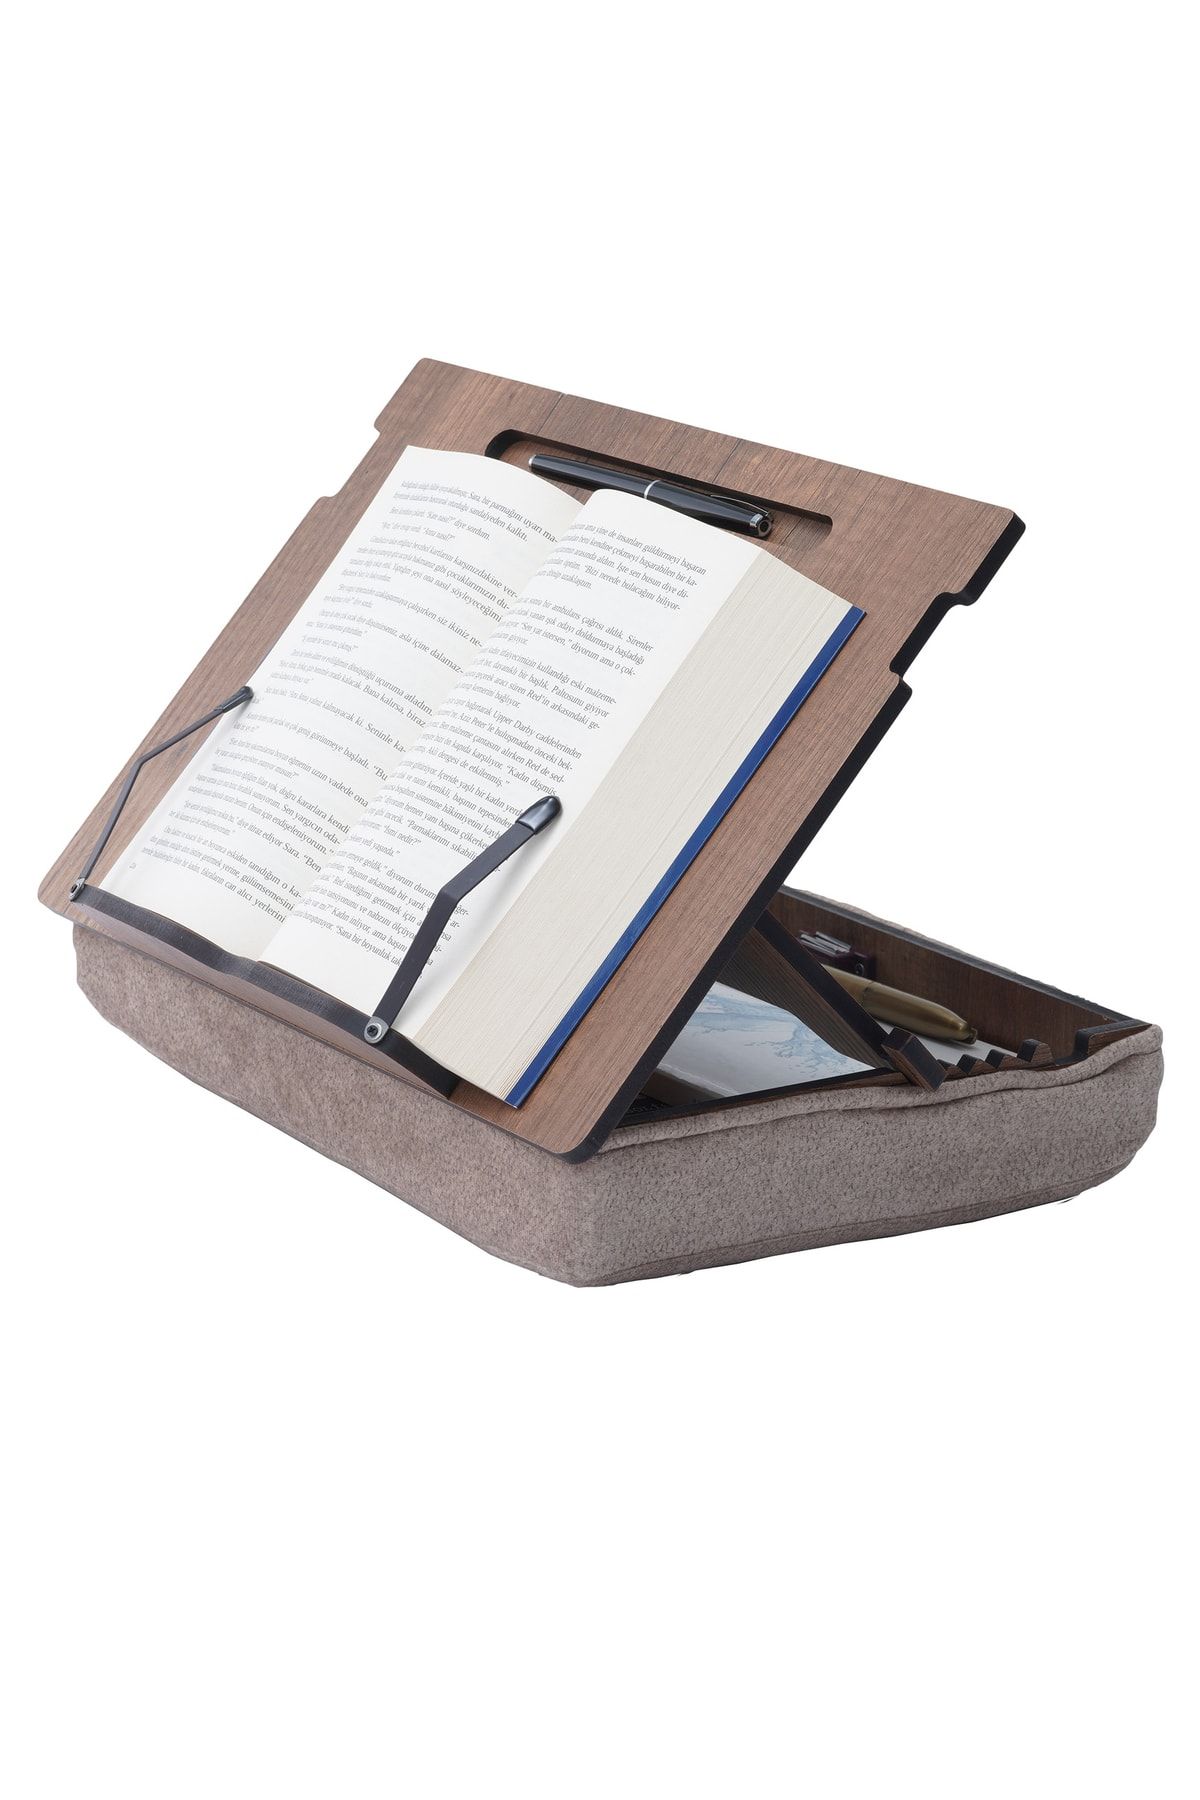 Vigo Wood Minderli Kitap Tutucu Yatakta Kitap Okuma Standı Laptop Tutucu Tablet Tutucu